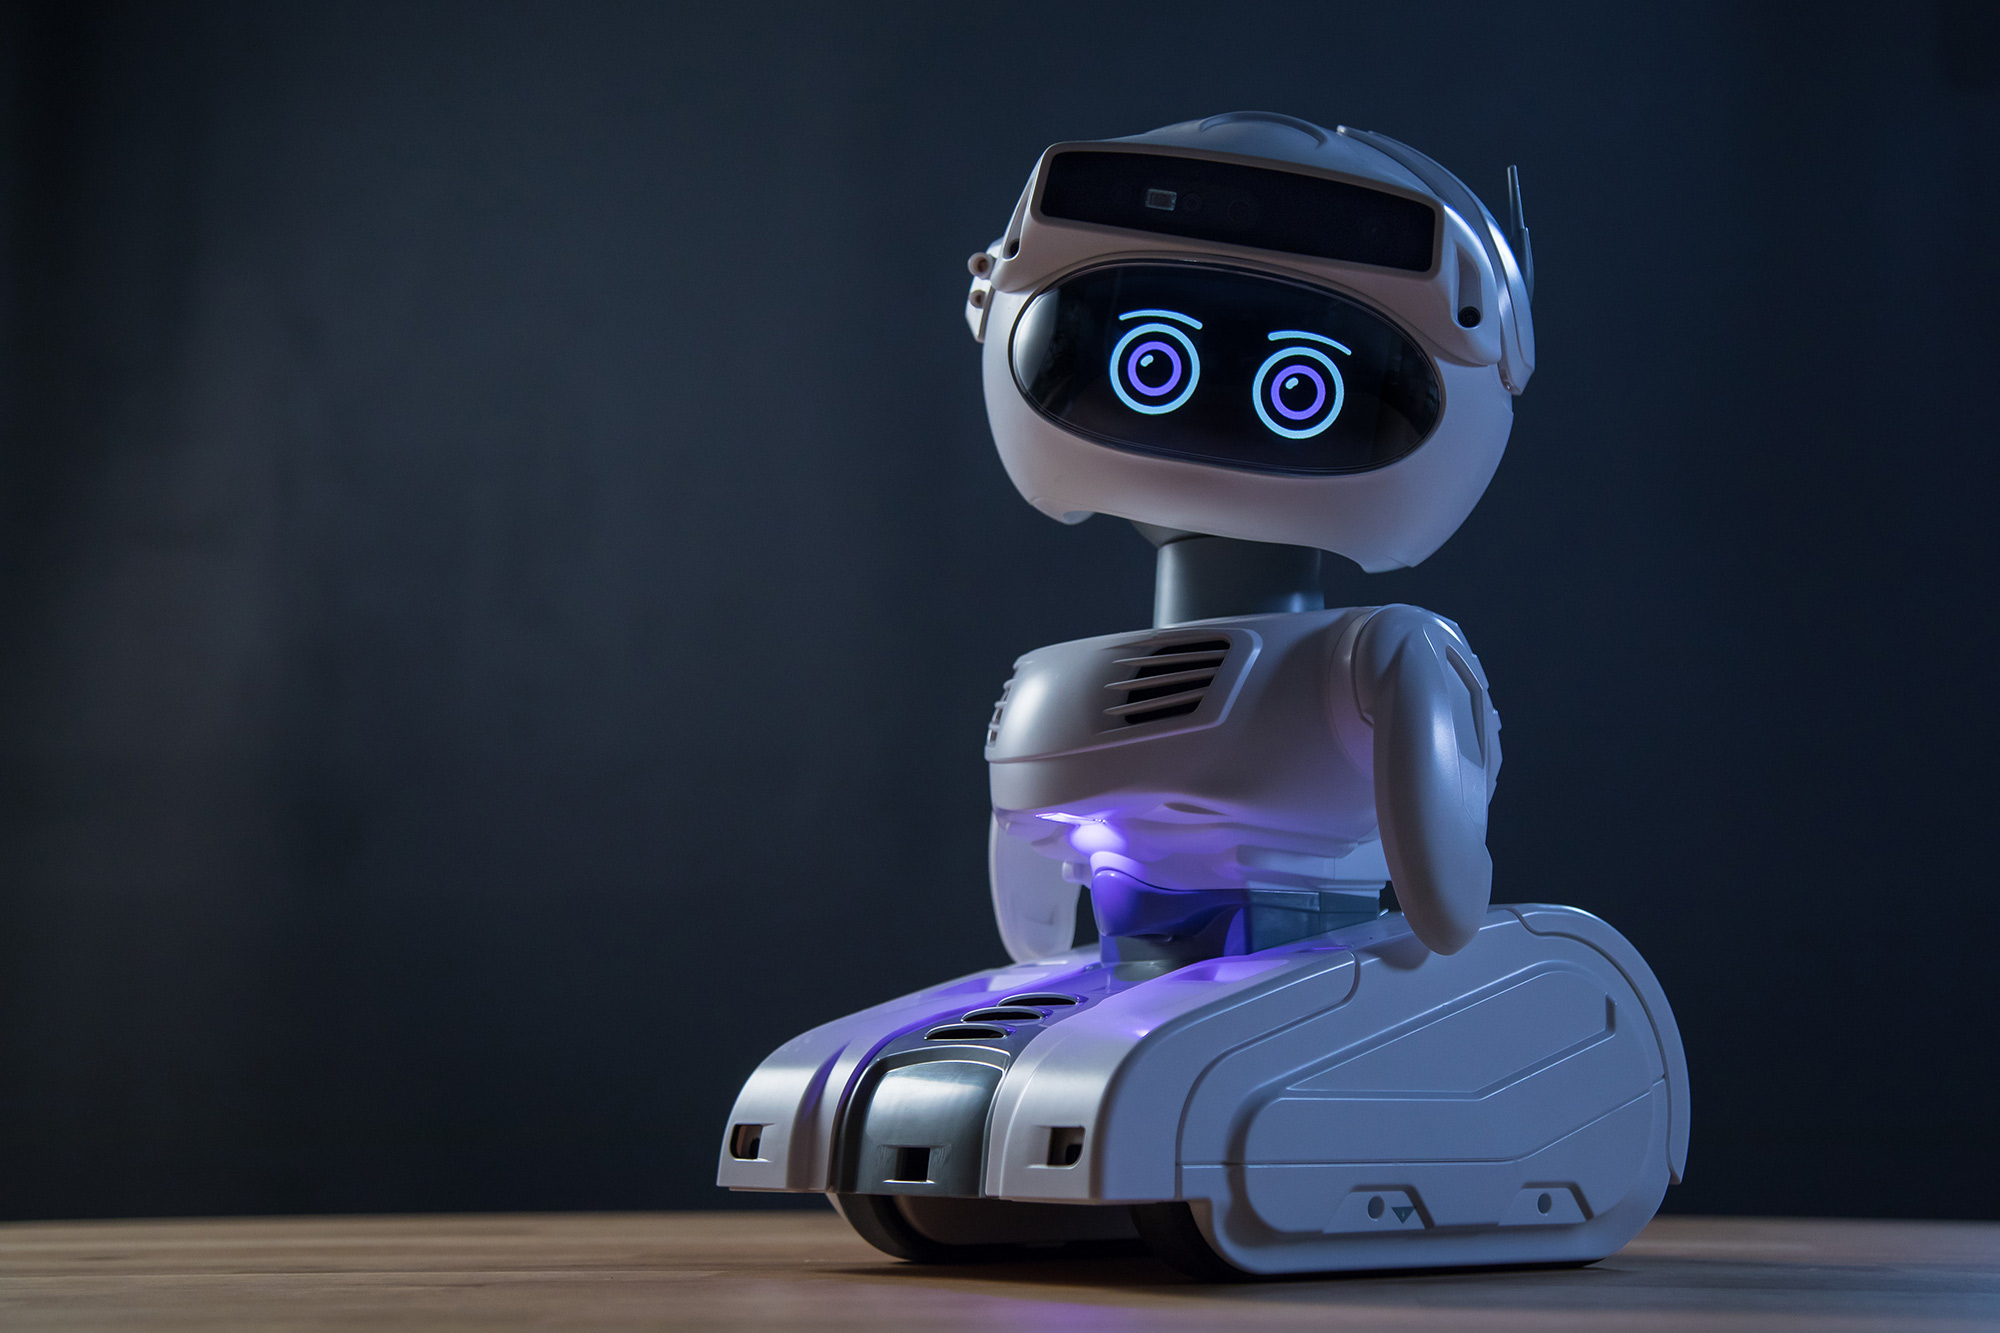 Milepæl støj job Swedish Maker of 'Furhat' Social Robot Acquires Misty Robotics - Bloomberg